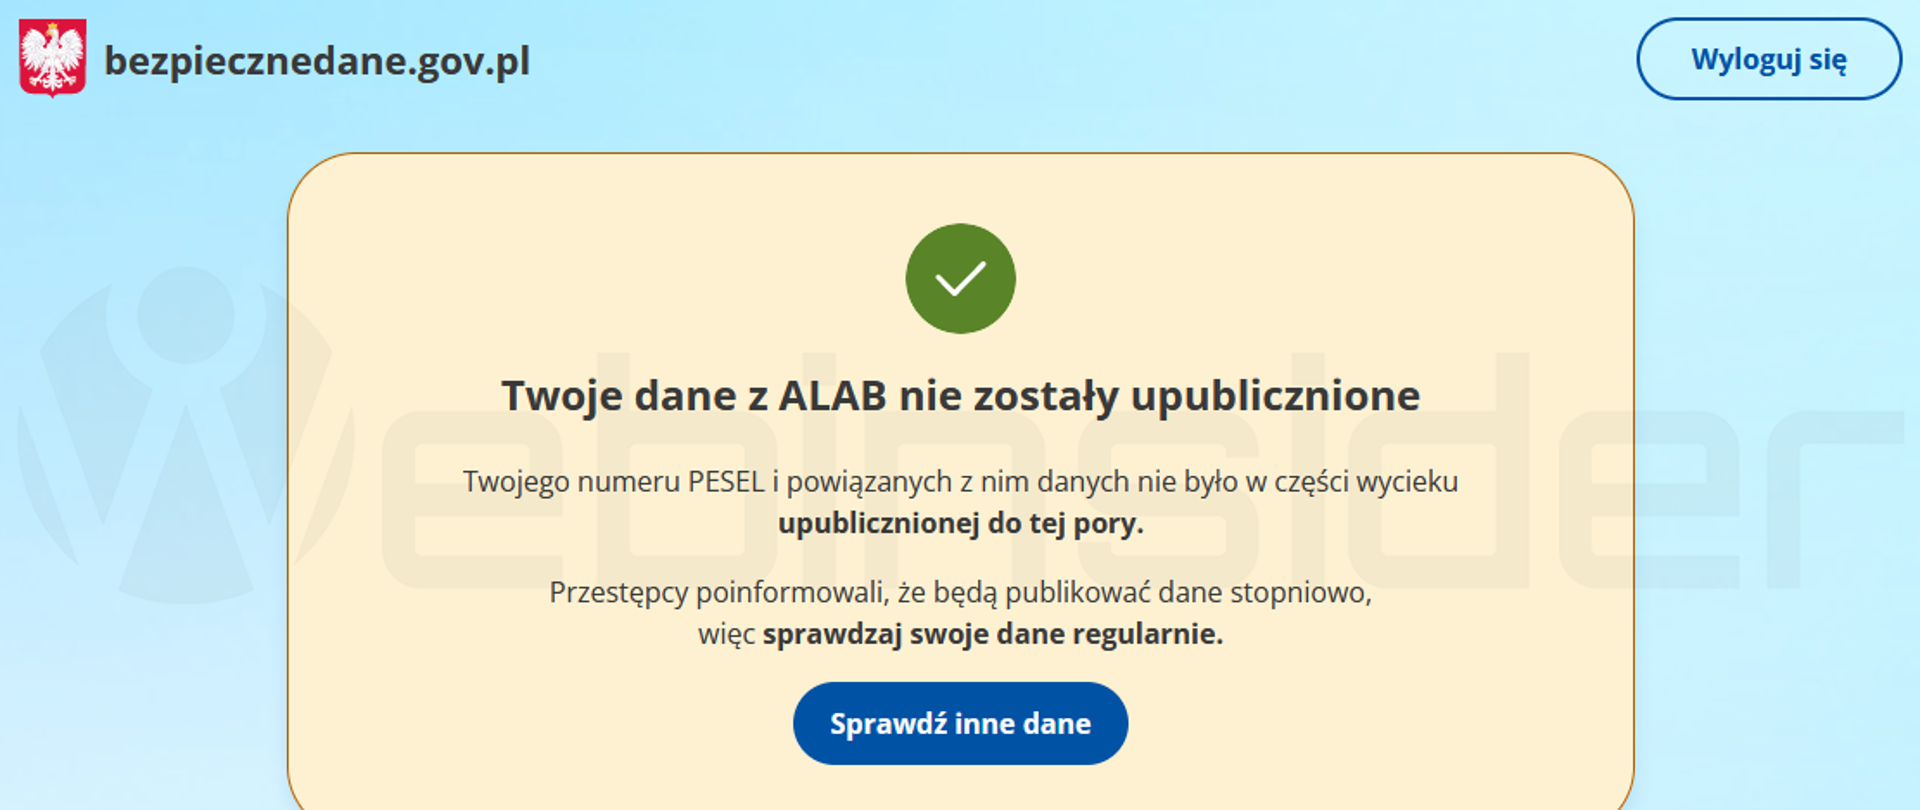 Zdjęcie strony internetowej bezpiecznedane.pl. Na niebieskim tle, jasno żółty prostokąt z napisem Twoje dane ALA nie zostały upublicznione. Sprawdź inne dane